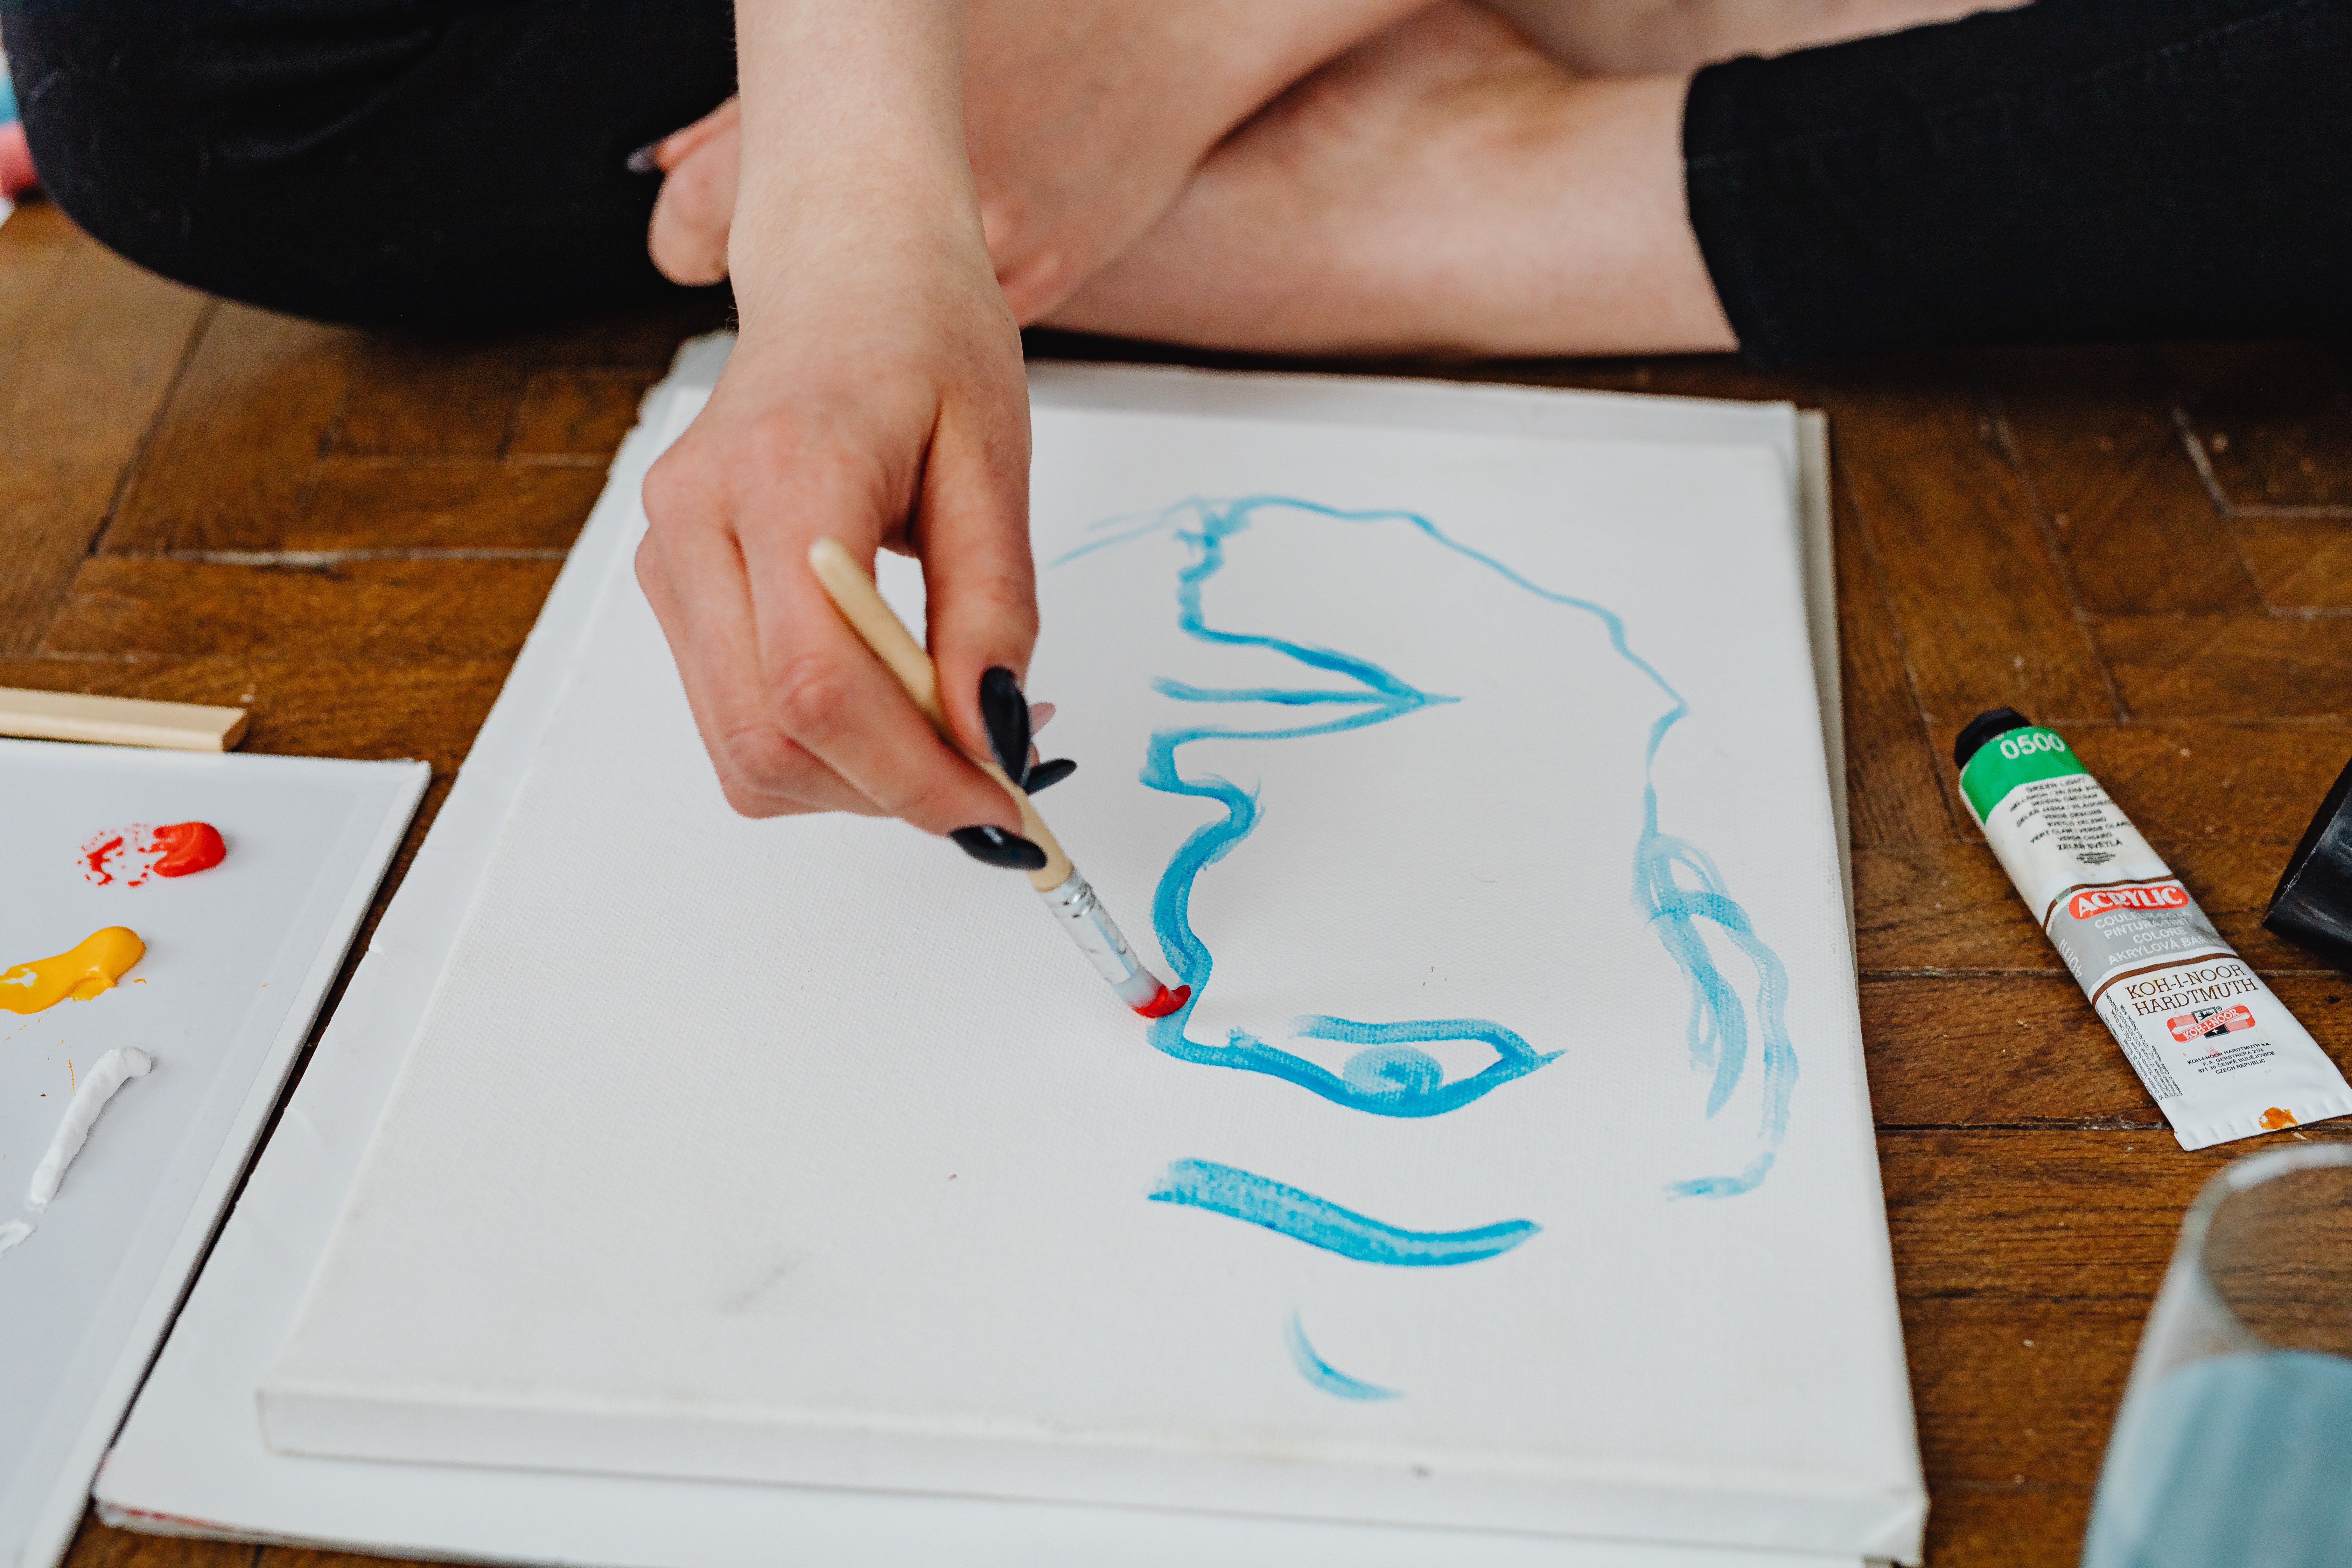 La imagen muestra a una persona dibujando una cara en un lienzo.